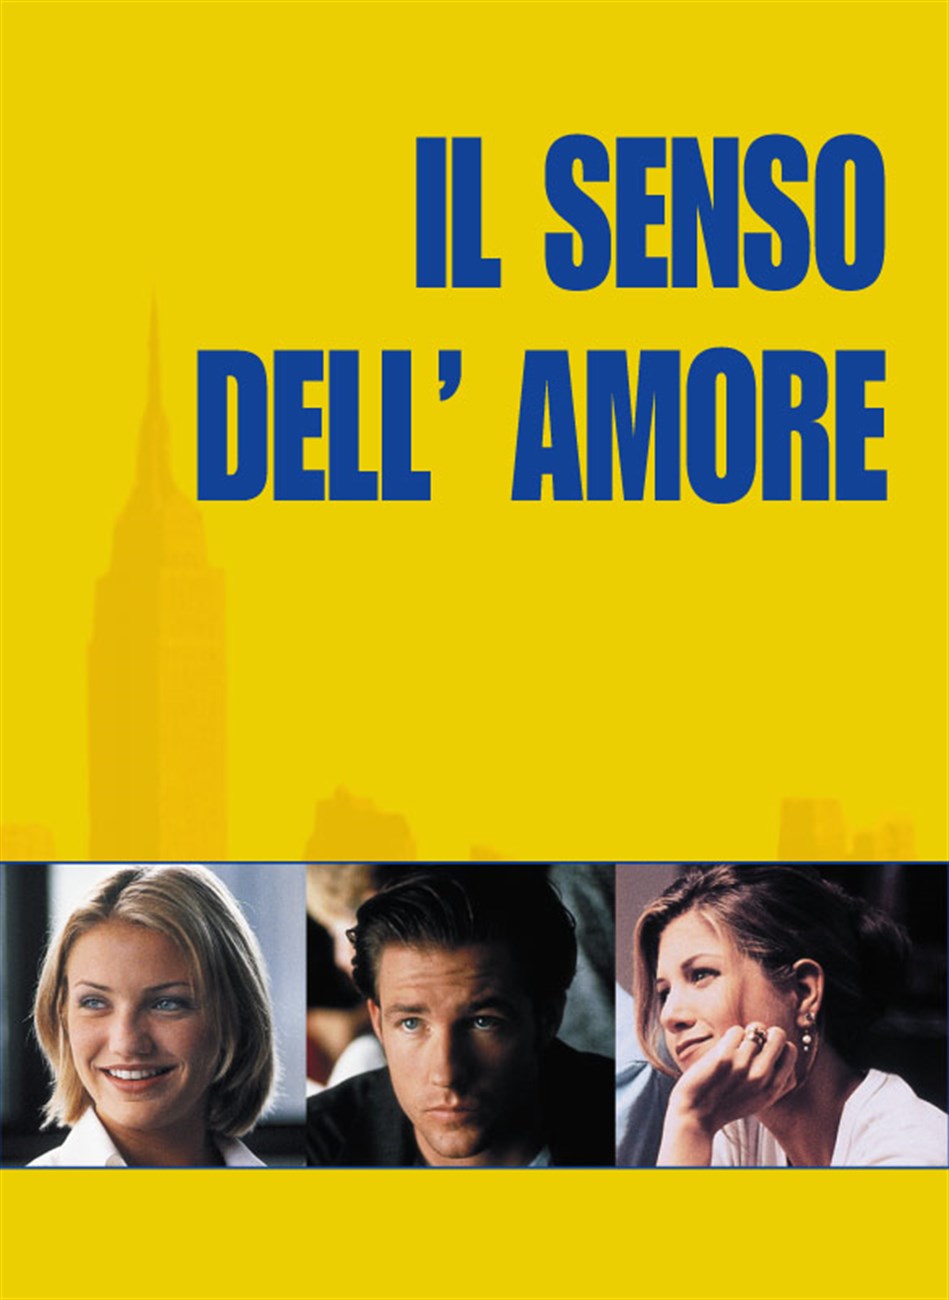 Il senso dell’amore (1996)